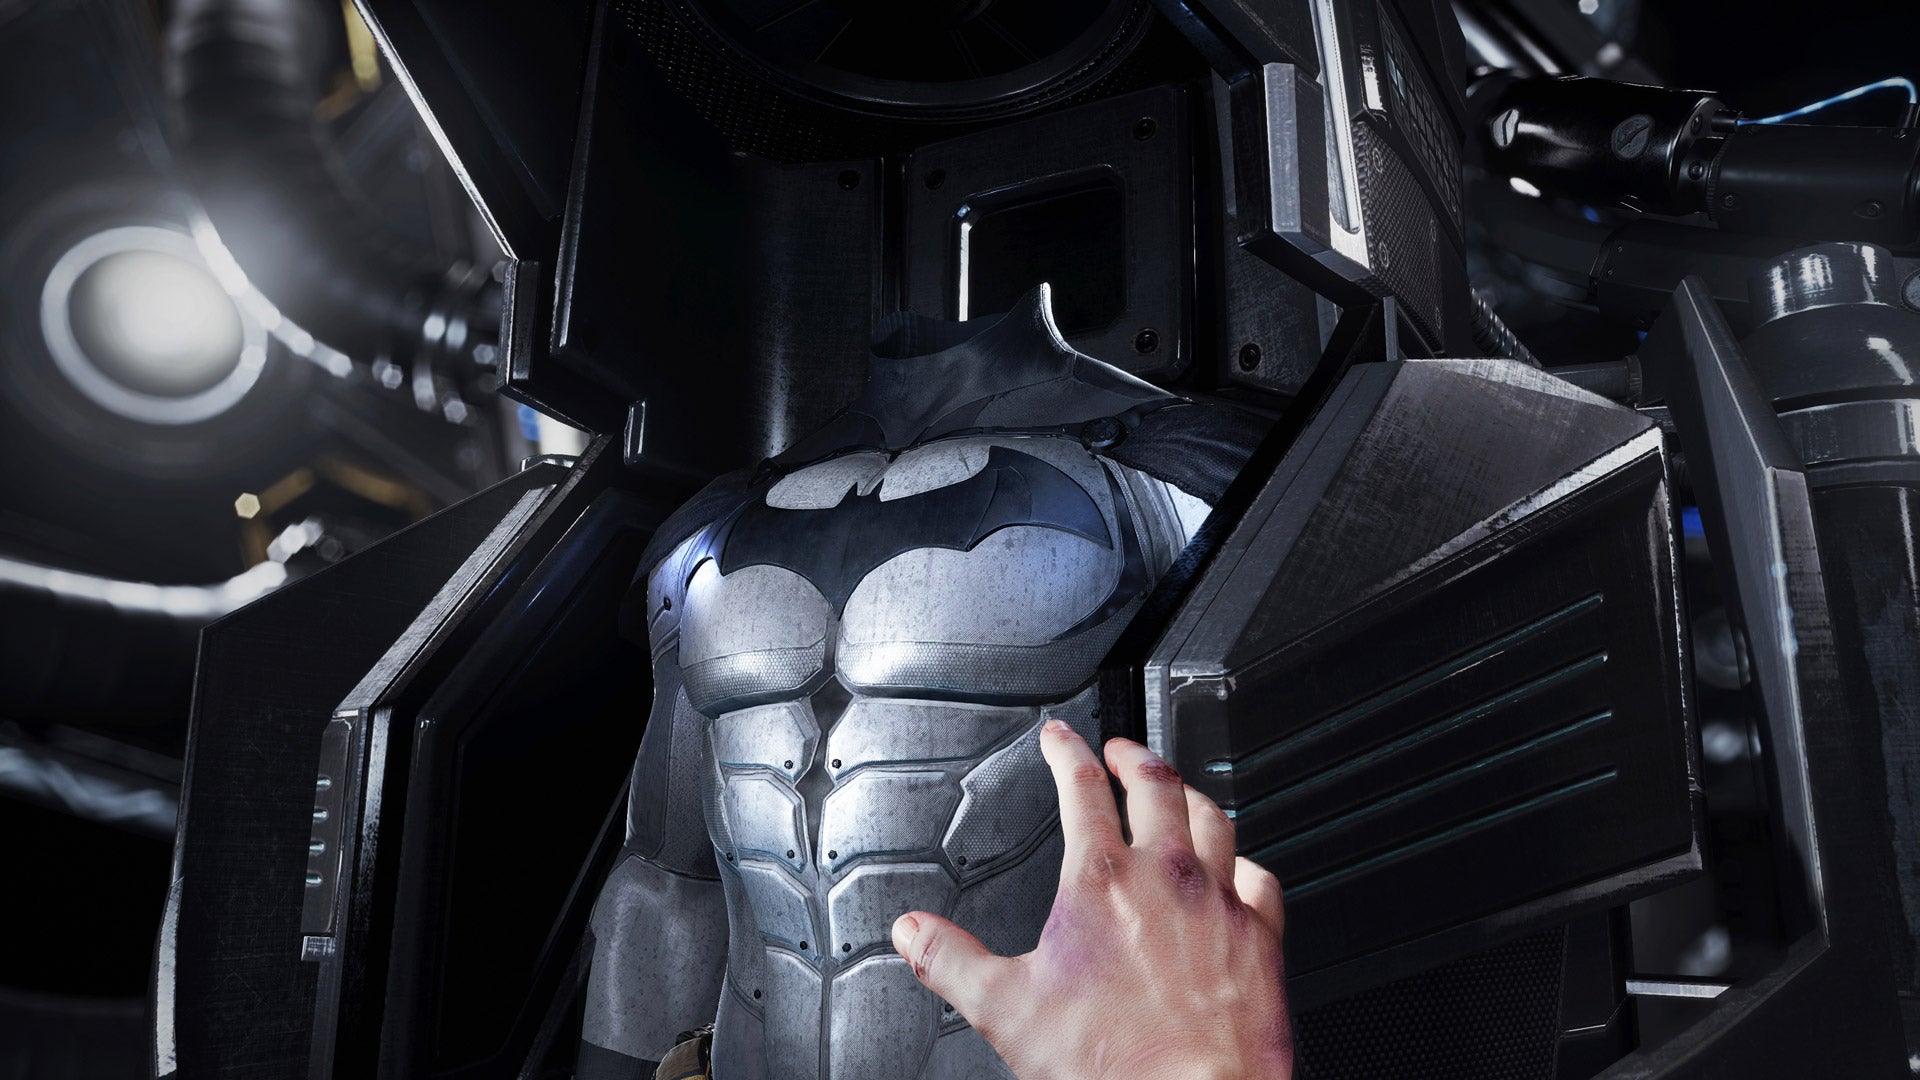 best vr gamesScreenshot from a VR game of Batman